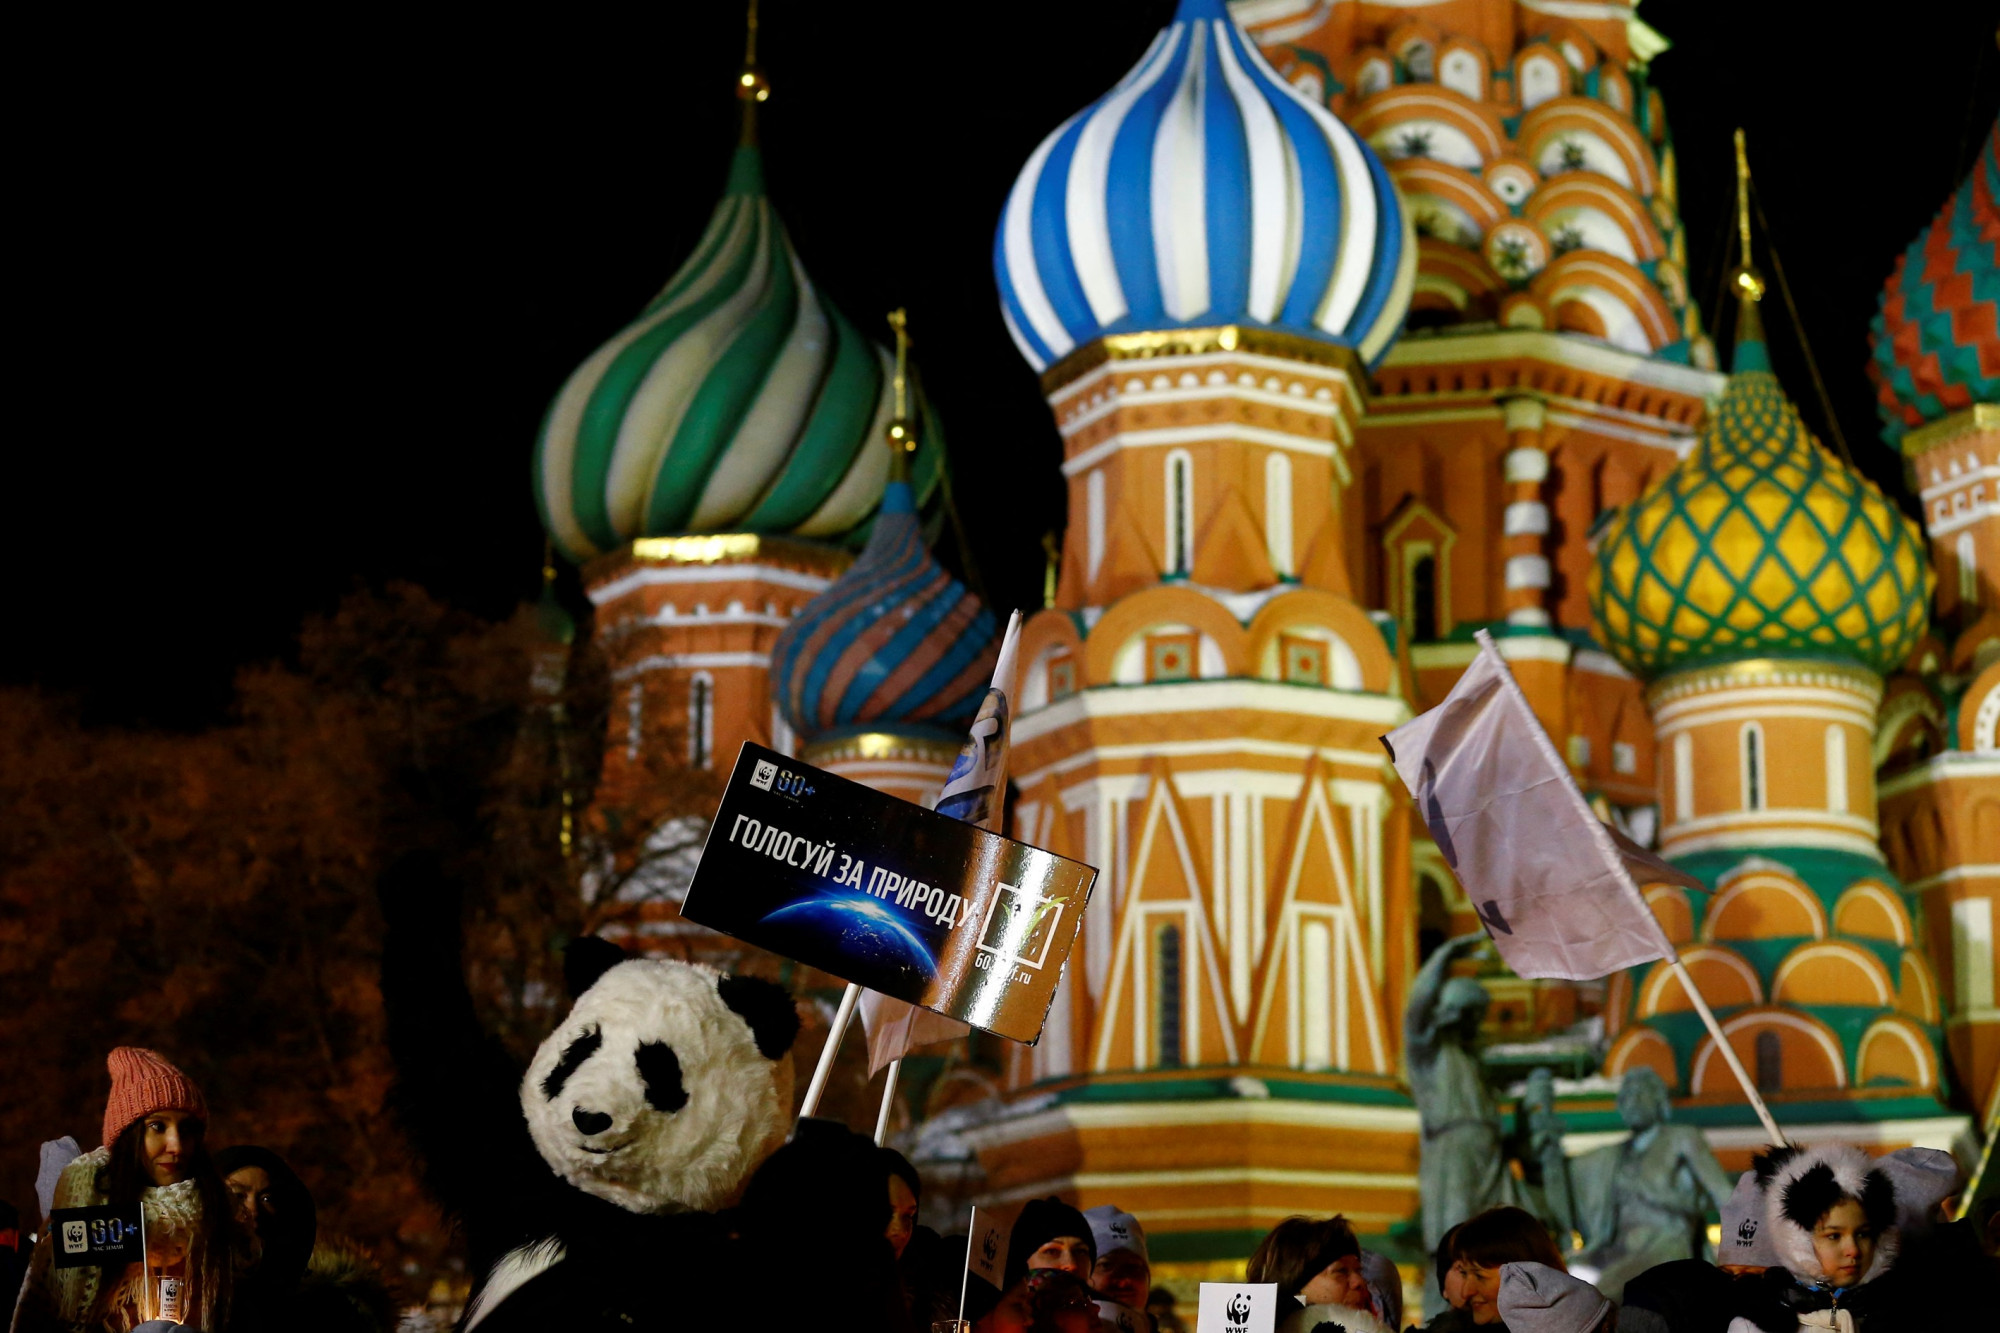 Kitiltották Oroszországból a WWF-et